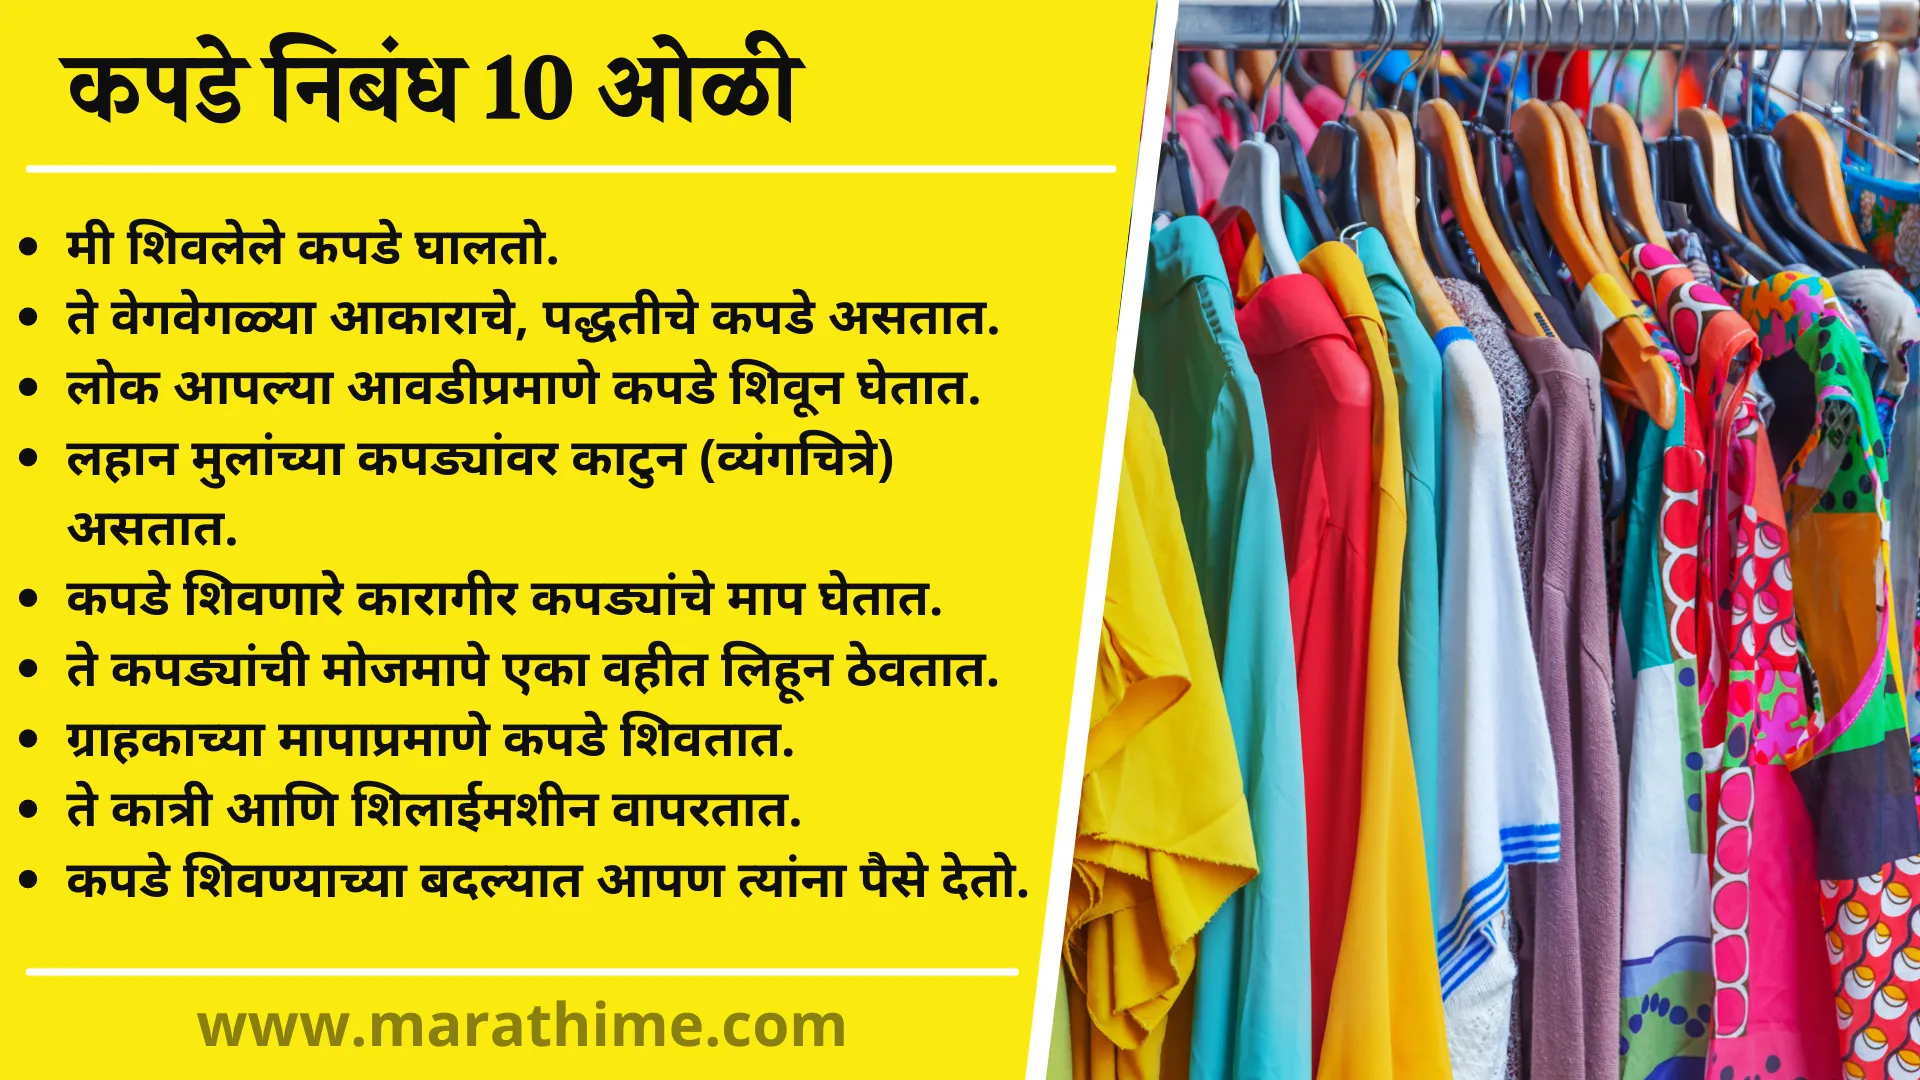 कपडे  निबंध 10 ओळी, 10 Lines on Clothes in Marathi, Essay on Clothes in Marathi